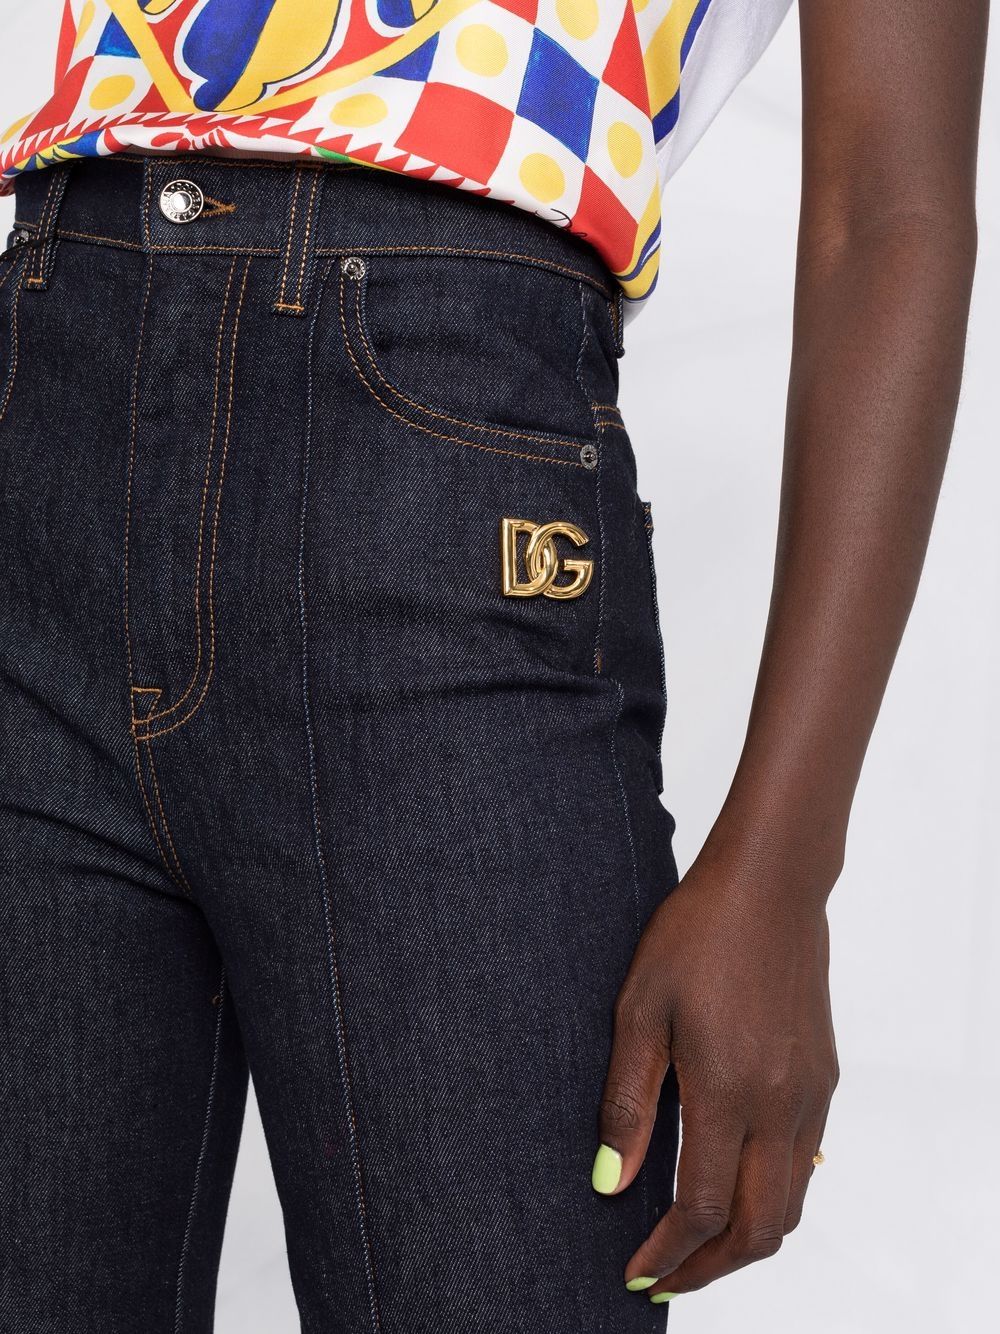 фото Dolce & gabbana джинсы bootcut с завышенной талией и логотипом dg